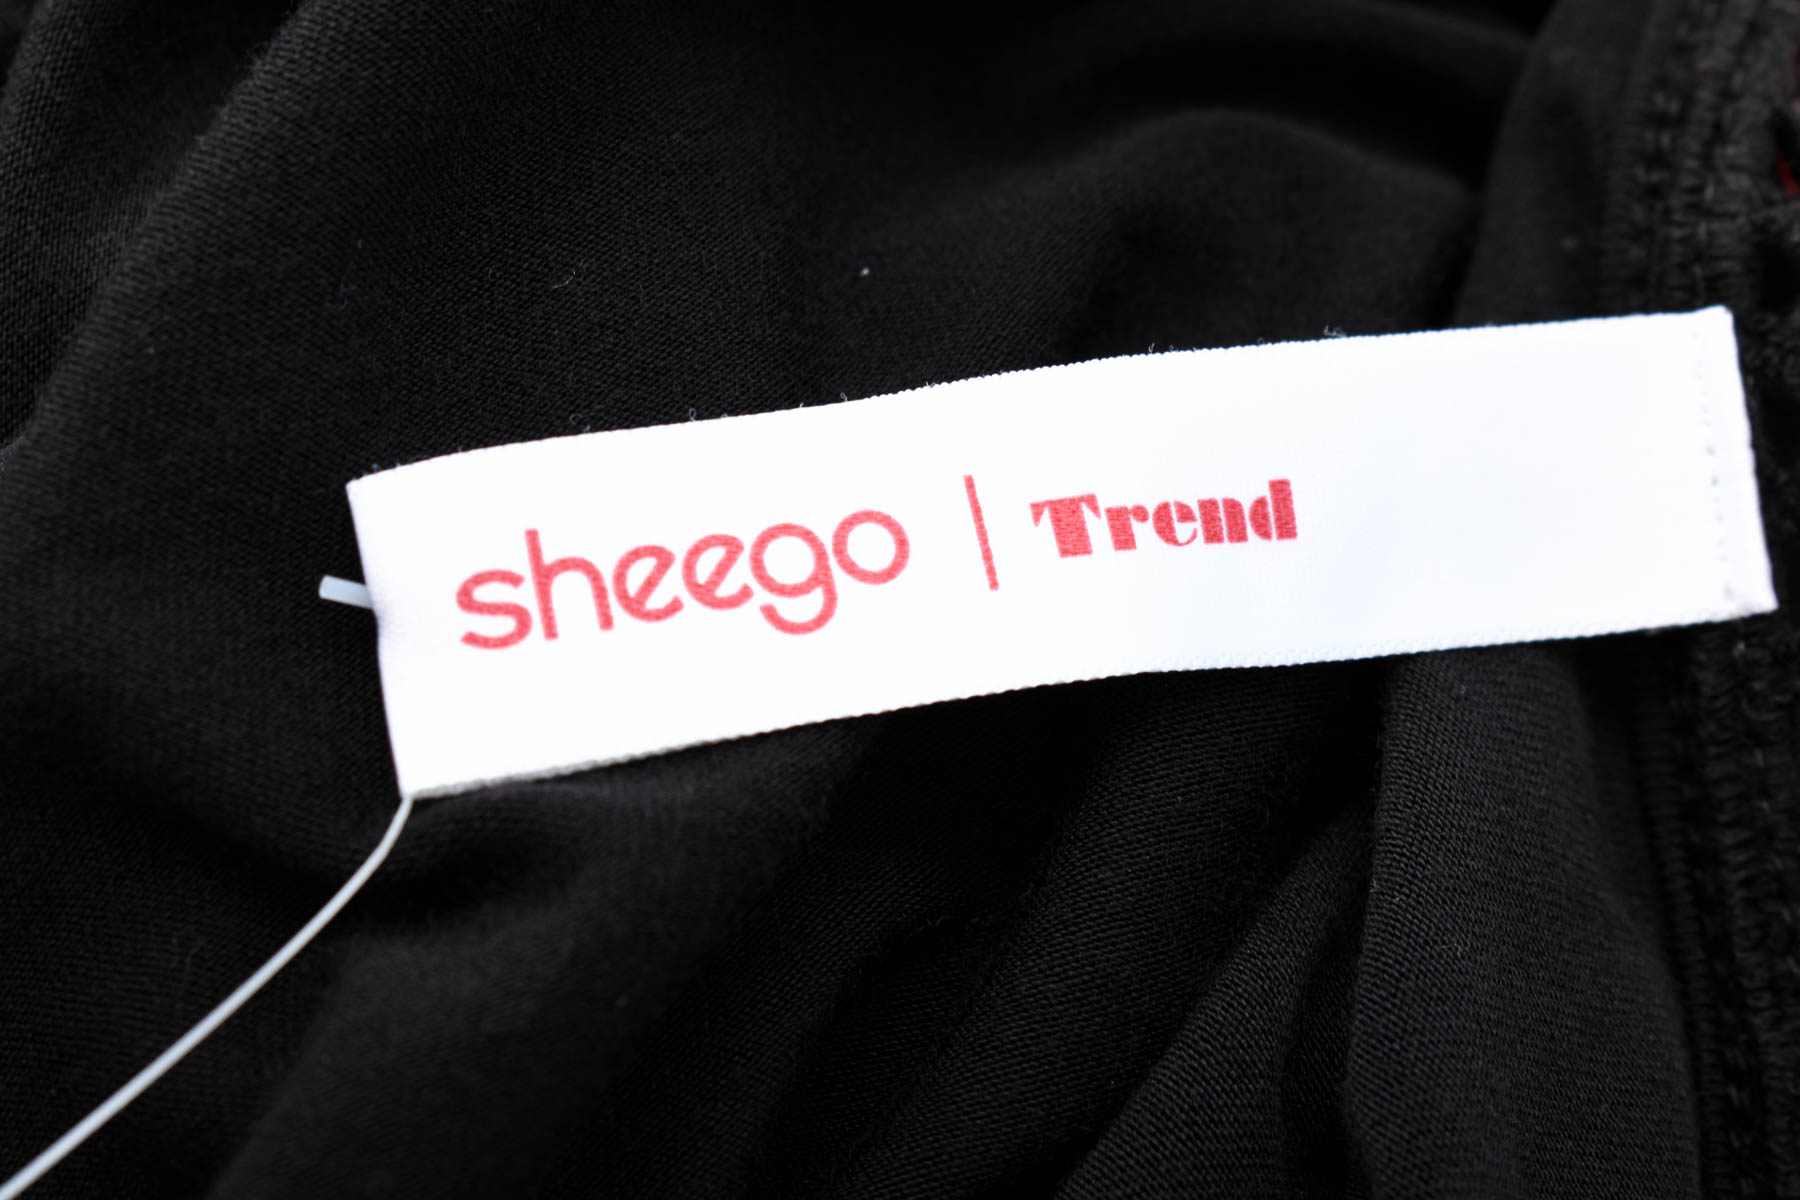 Γυναικεία μπλούζα - Sheego - 2